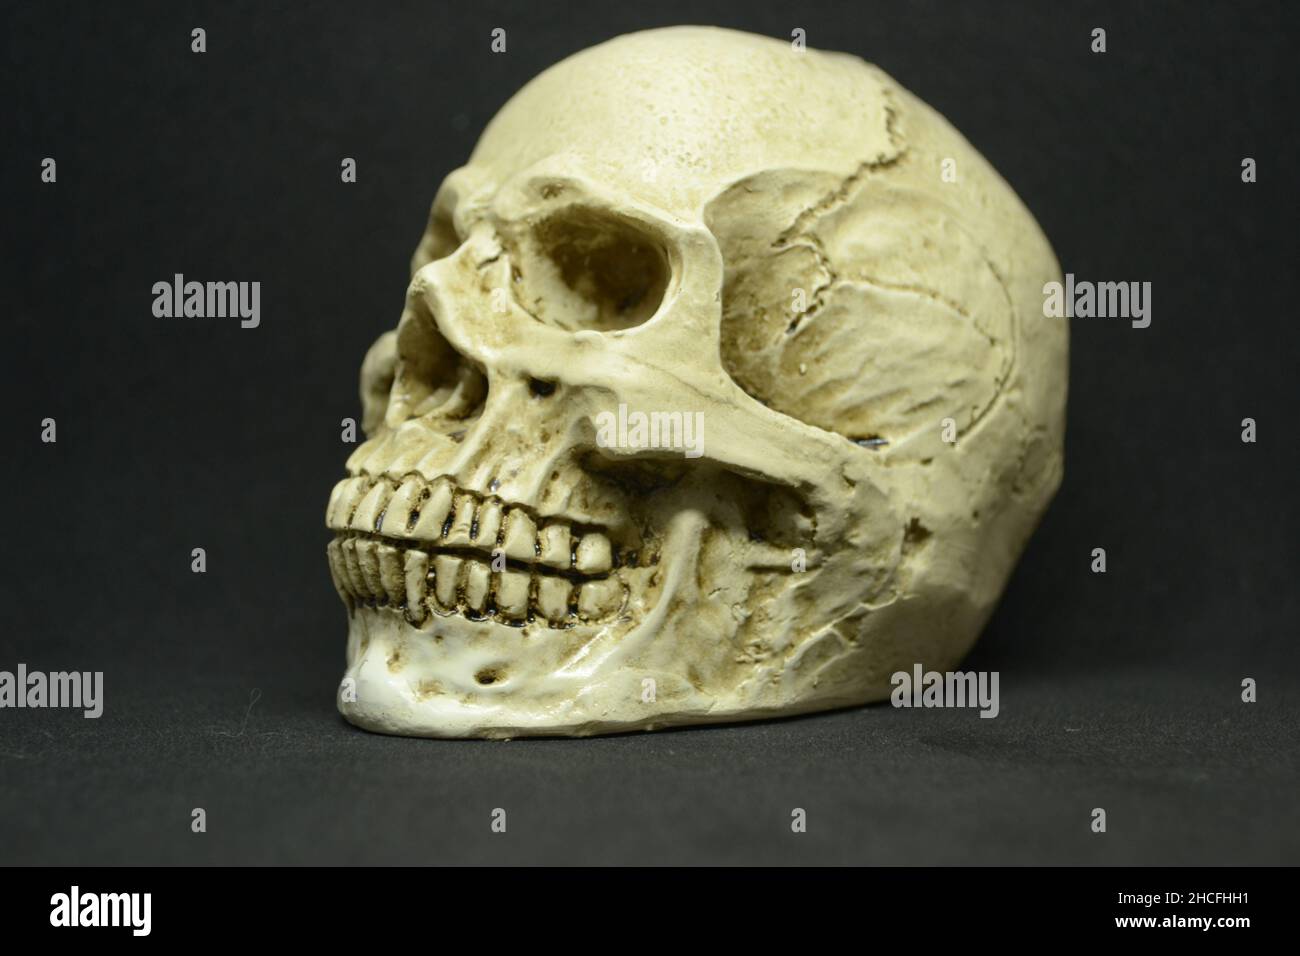 Gros plan du crâne humain sur fond sombre. Banque D'Images